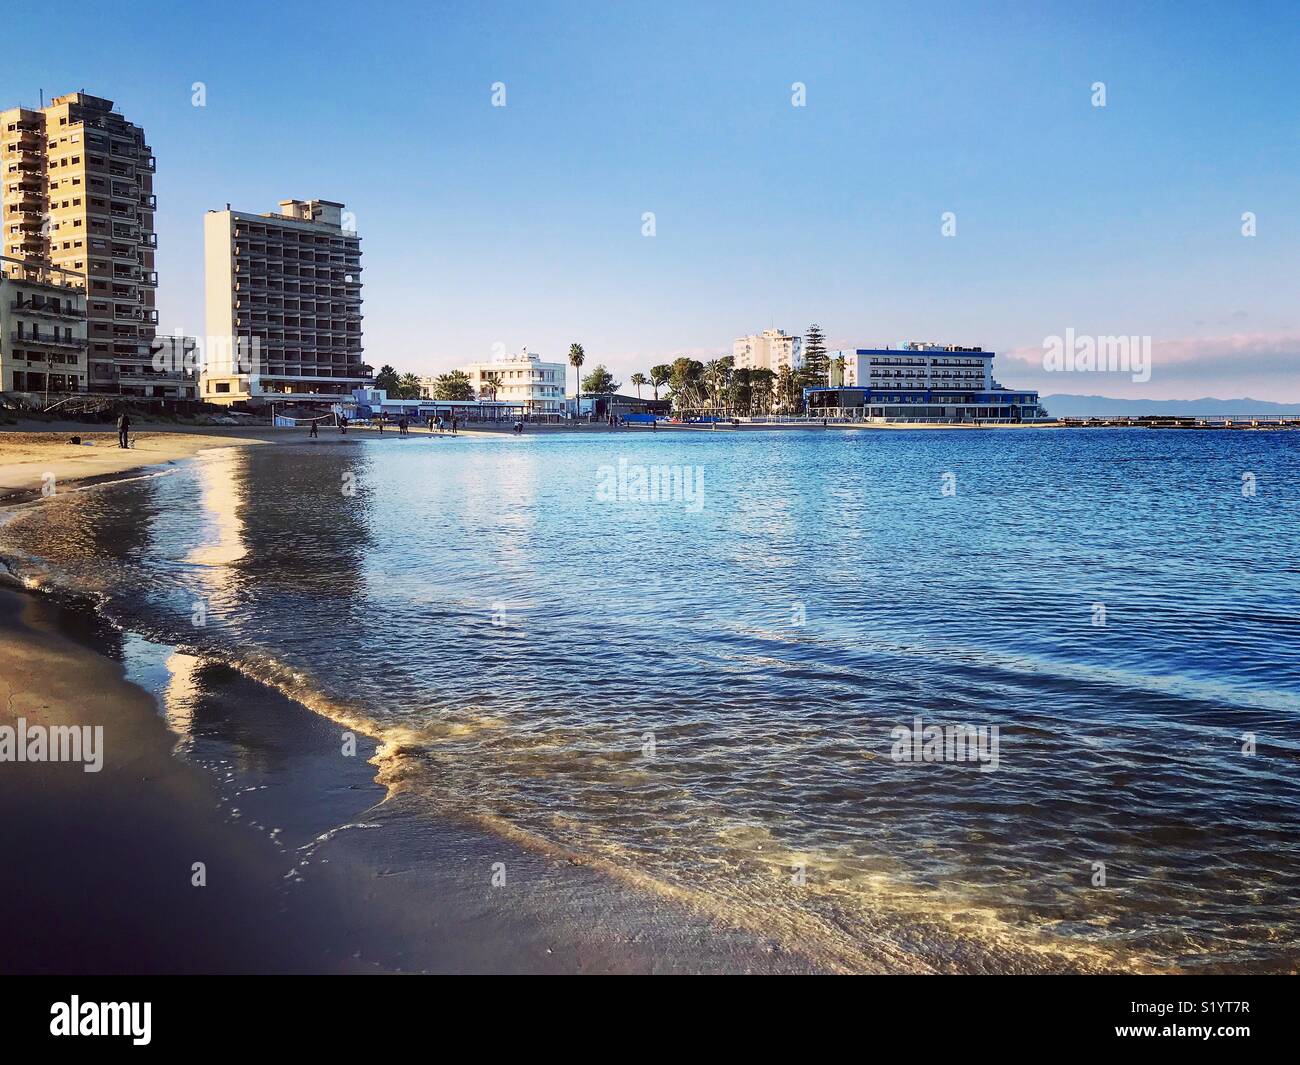 Abandoned hotels in Varosha, Famagusta, Cyprus Stock Photo